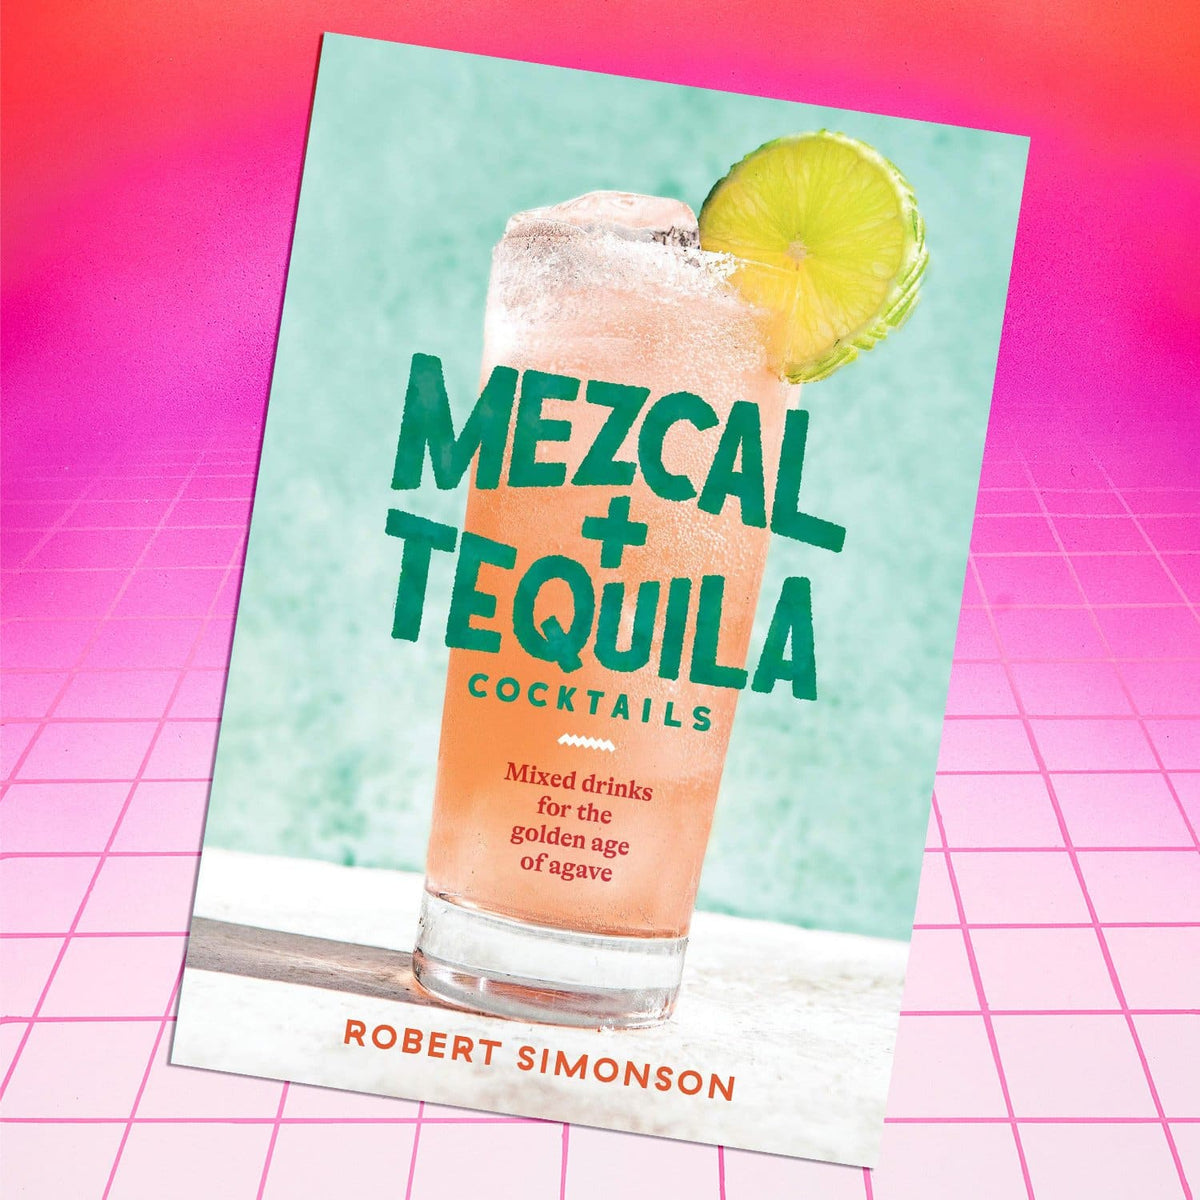 Mezcal and Tequila Cocktails Bookupload - Cocktails - 